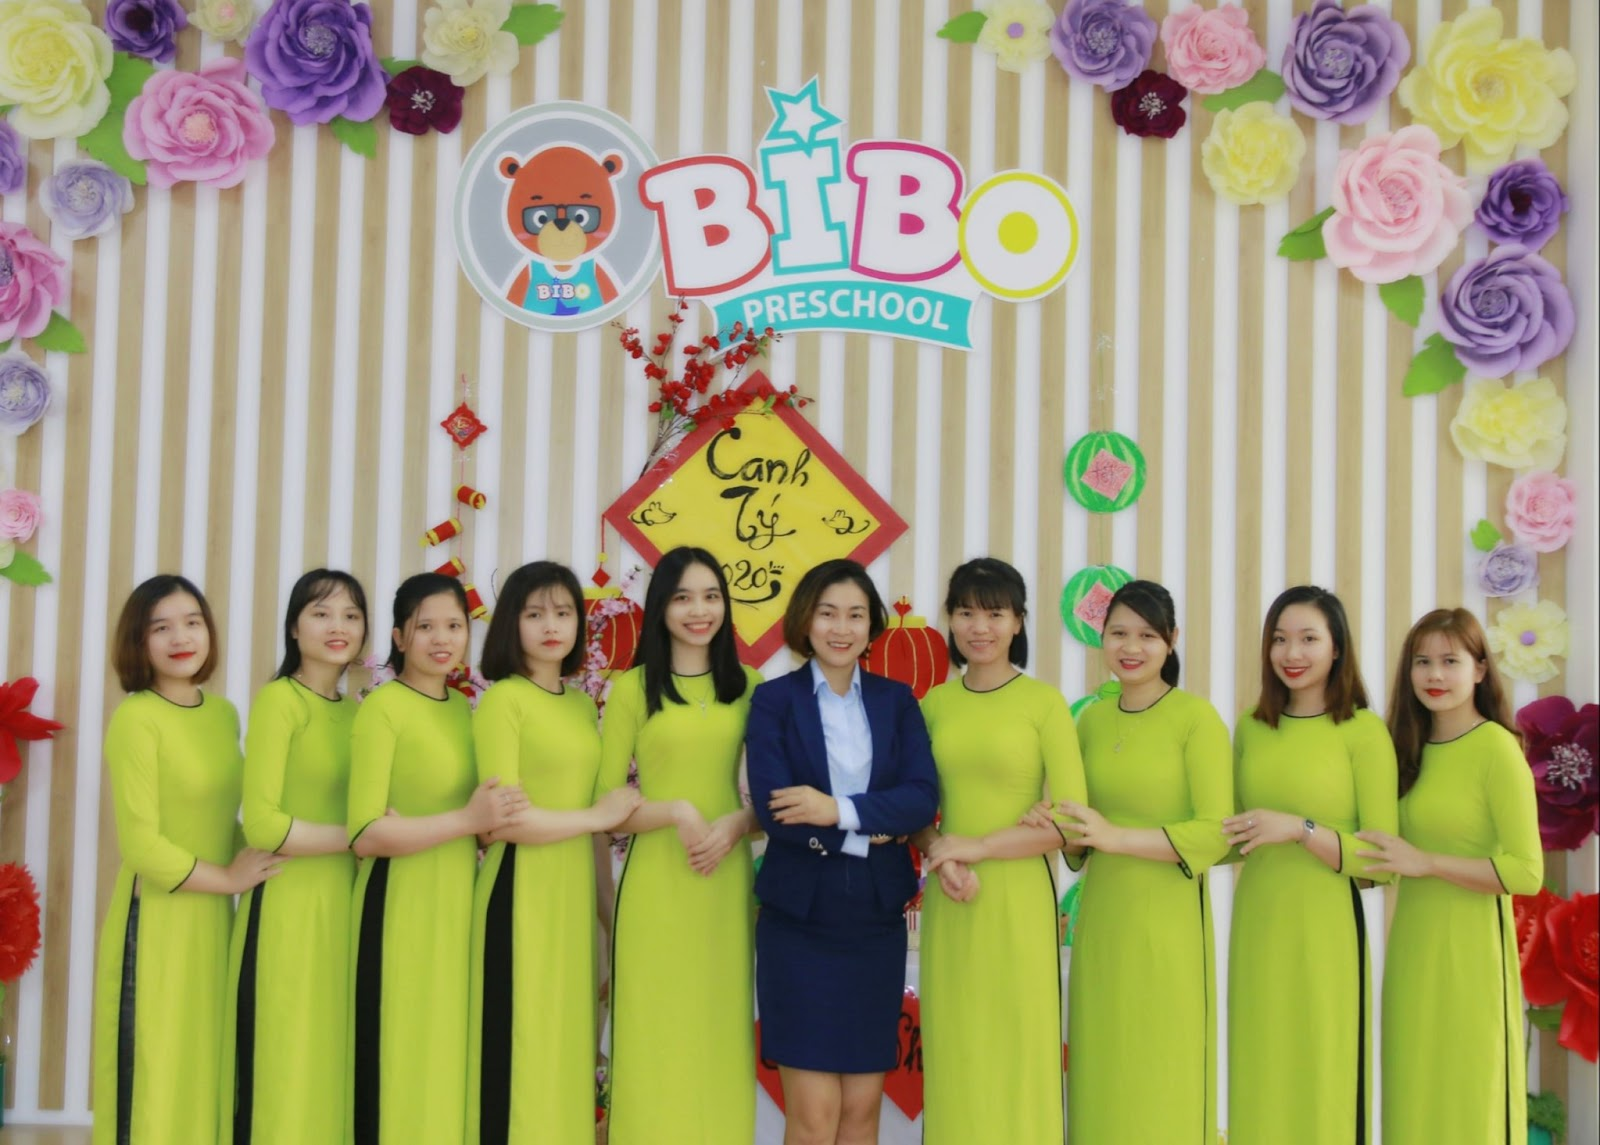 Đội ngũ giáo viên BIBO Preschool